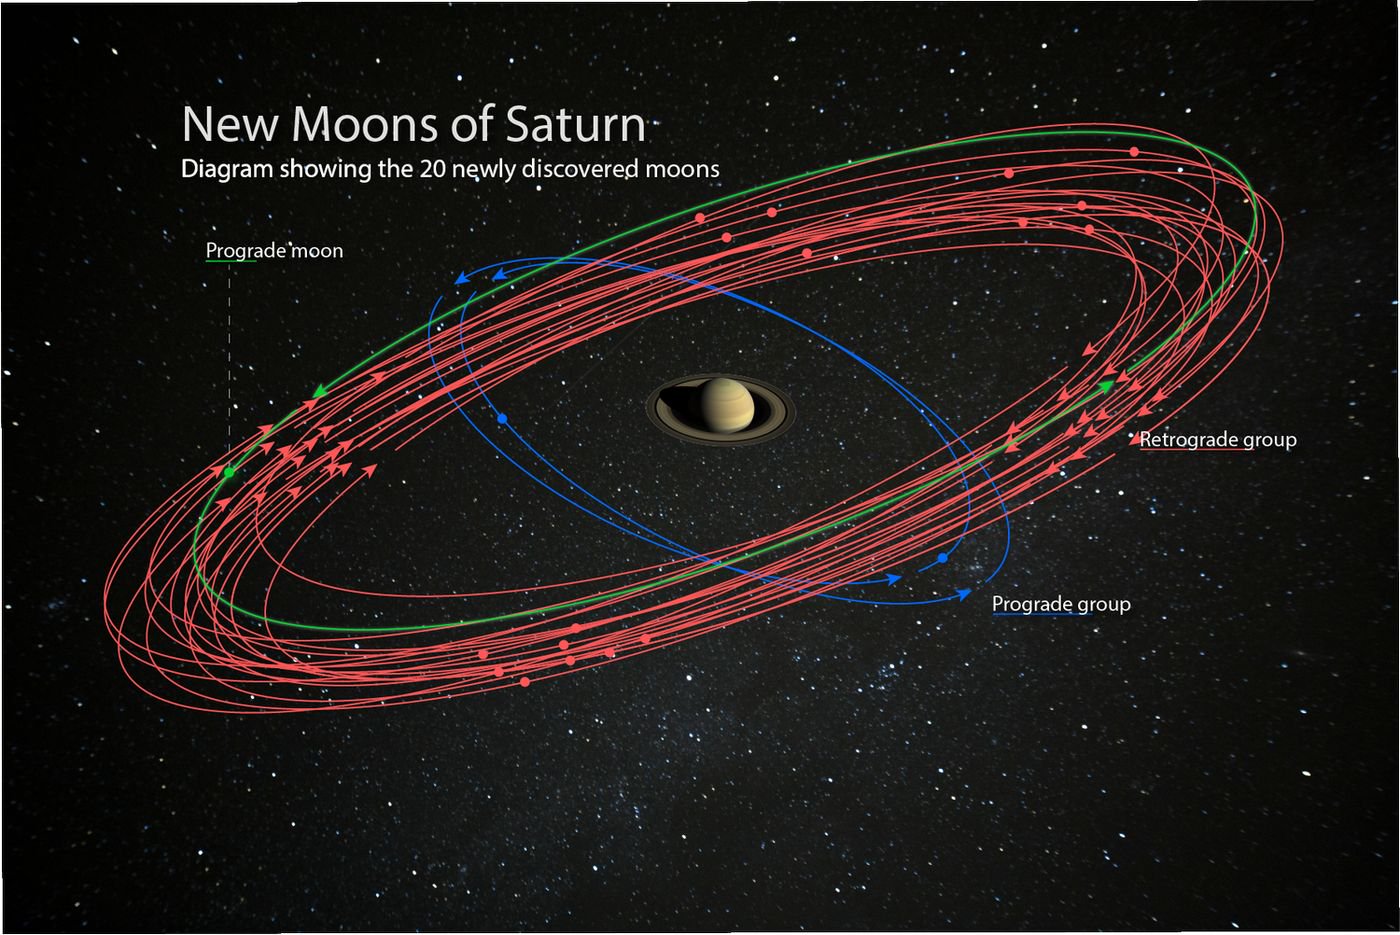 นักดาราศาสตร์ค้นพบดวงจันทร์บริวารดาวเสาร์เพิ่มอีก 20 ดวง แซงหน้าแชมป์เก่าดาวพฤหัสบดี ราชาแห่งวงแหวน ราชาแห่งดวงจันทร์